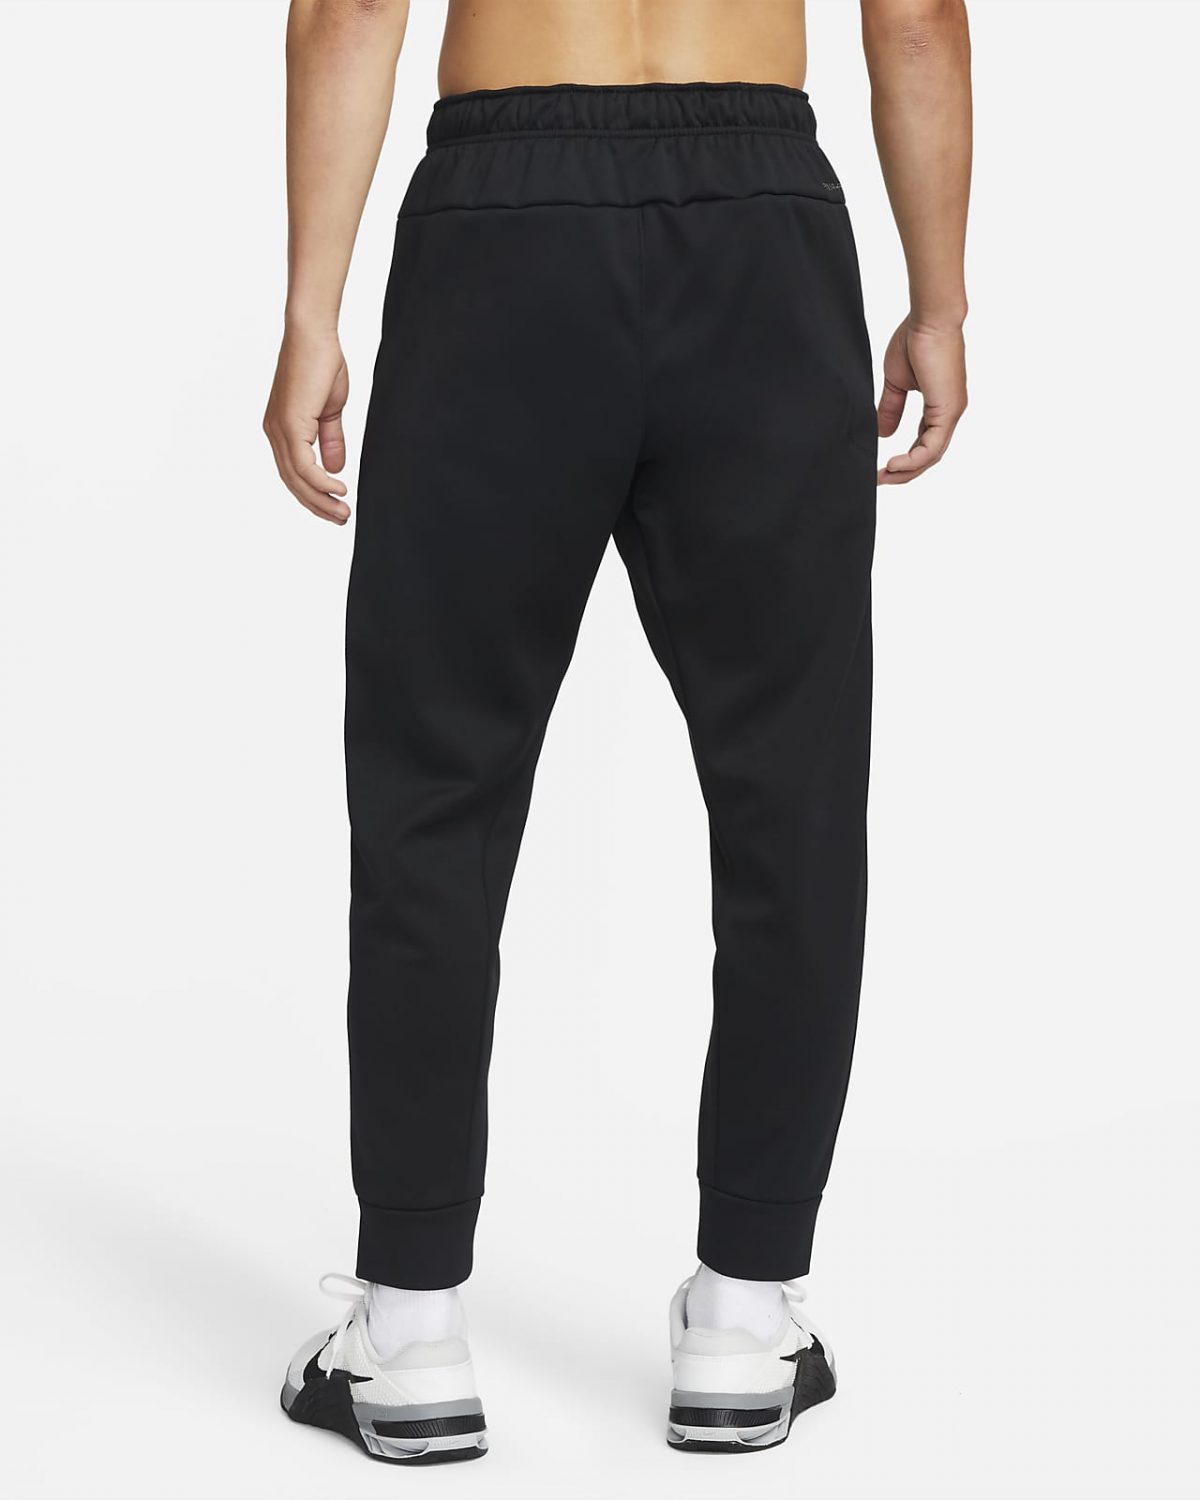 Мужские брюки Nike Therma-FIT черные фотография